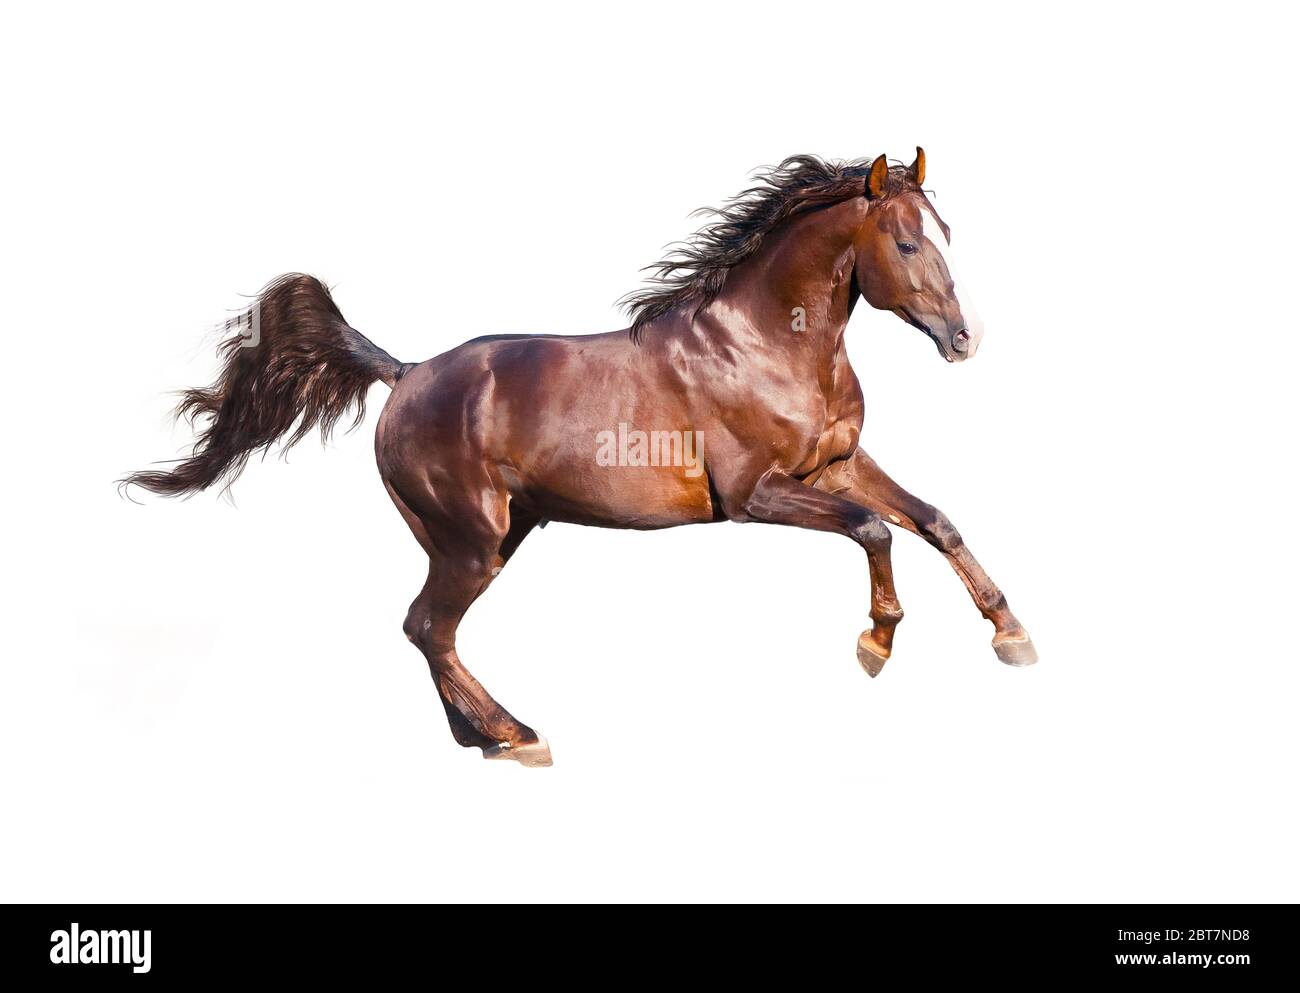 El caballo castaño joven está galopando rápido en la naturaleza. Foto de stock